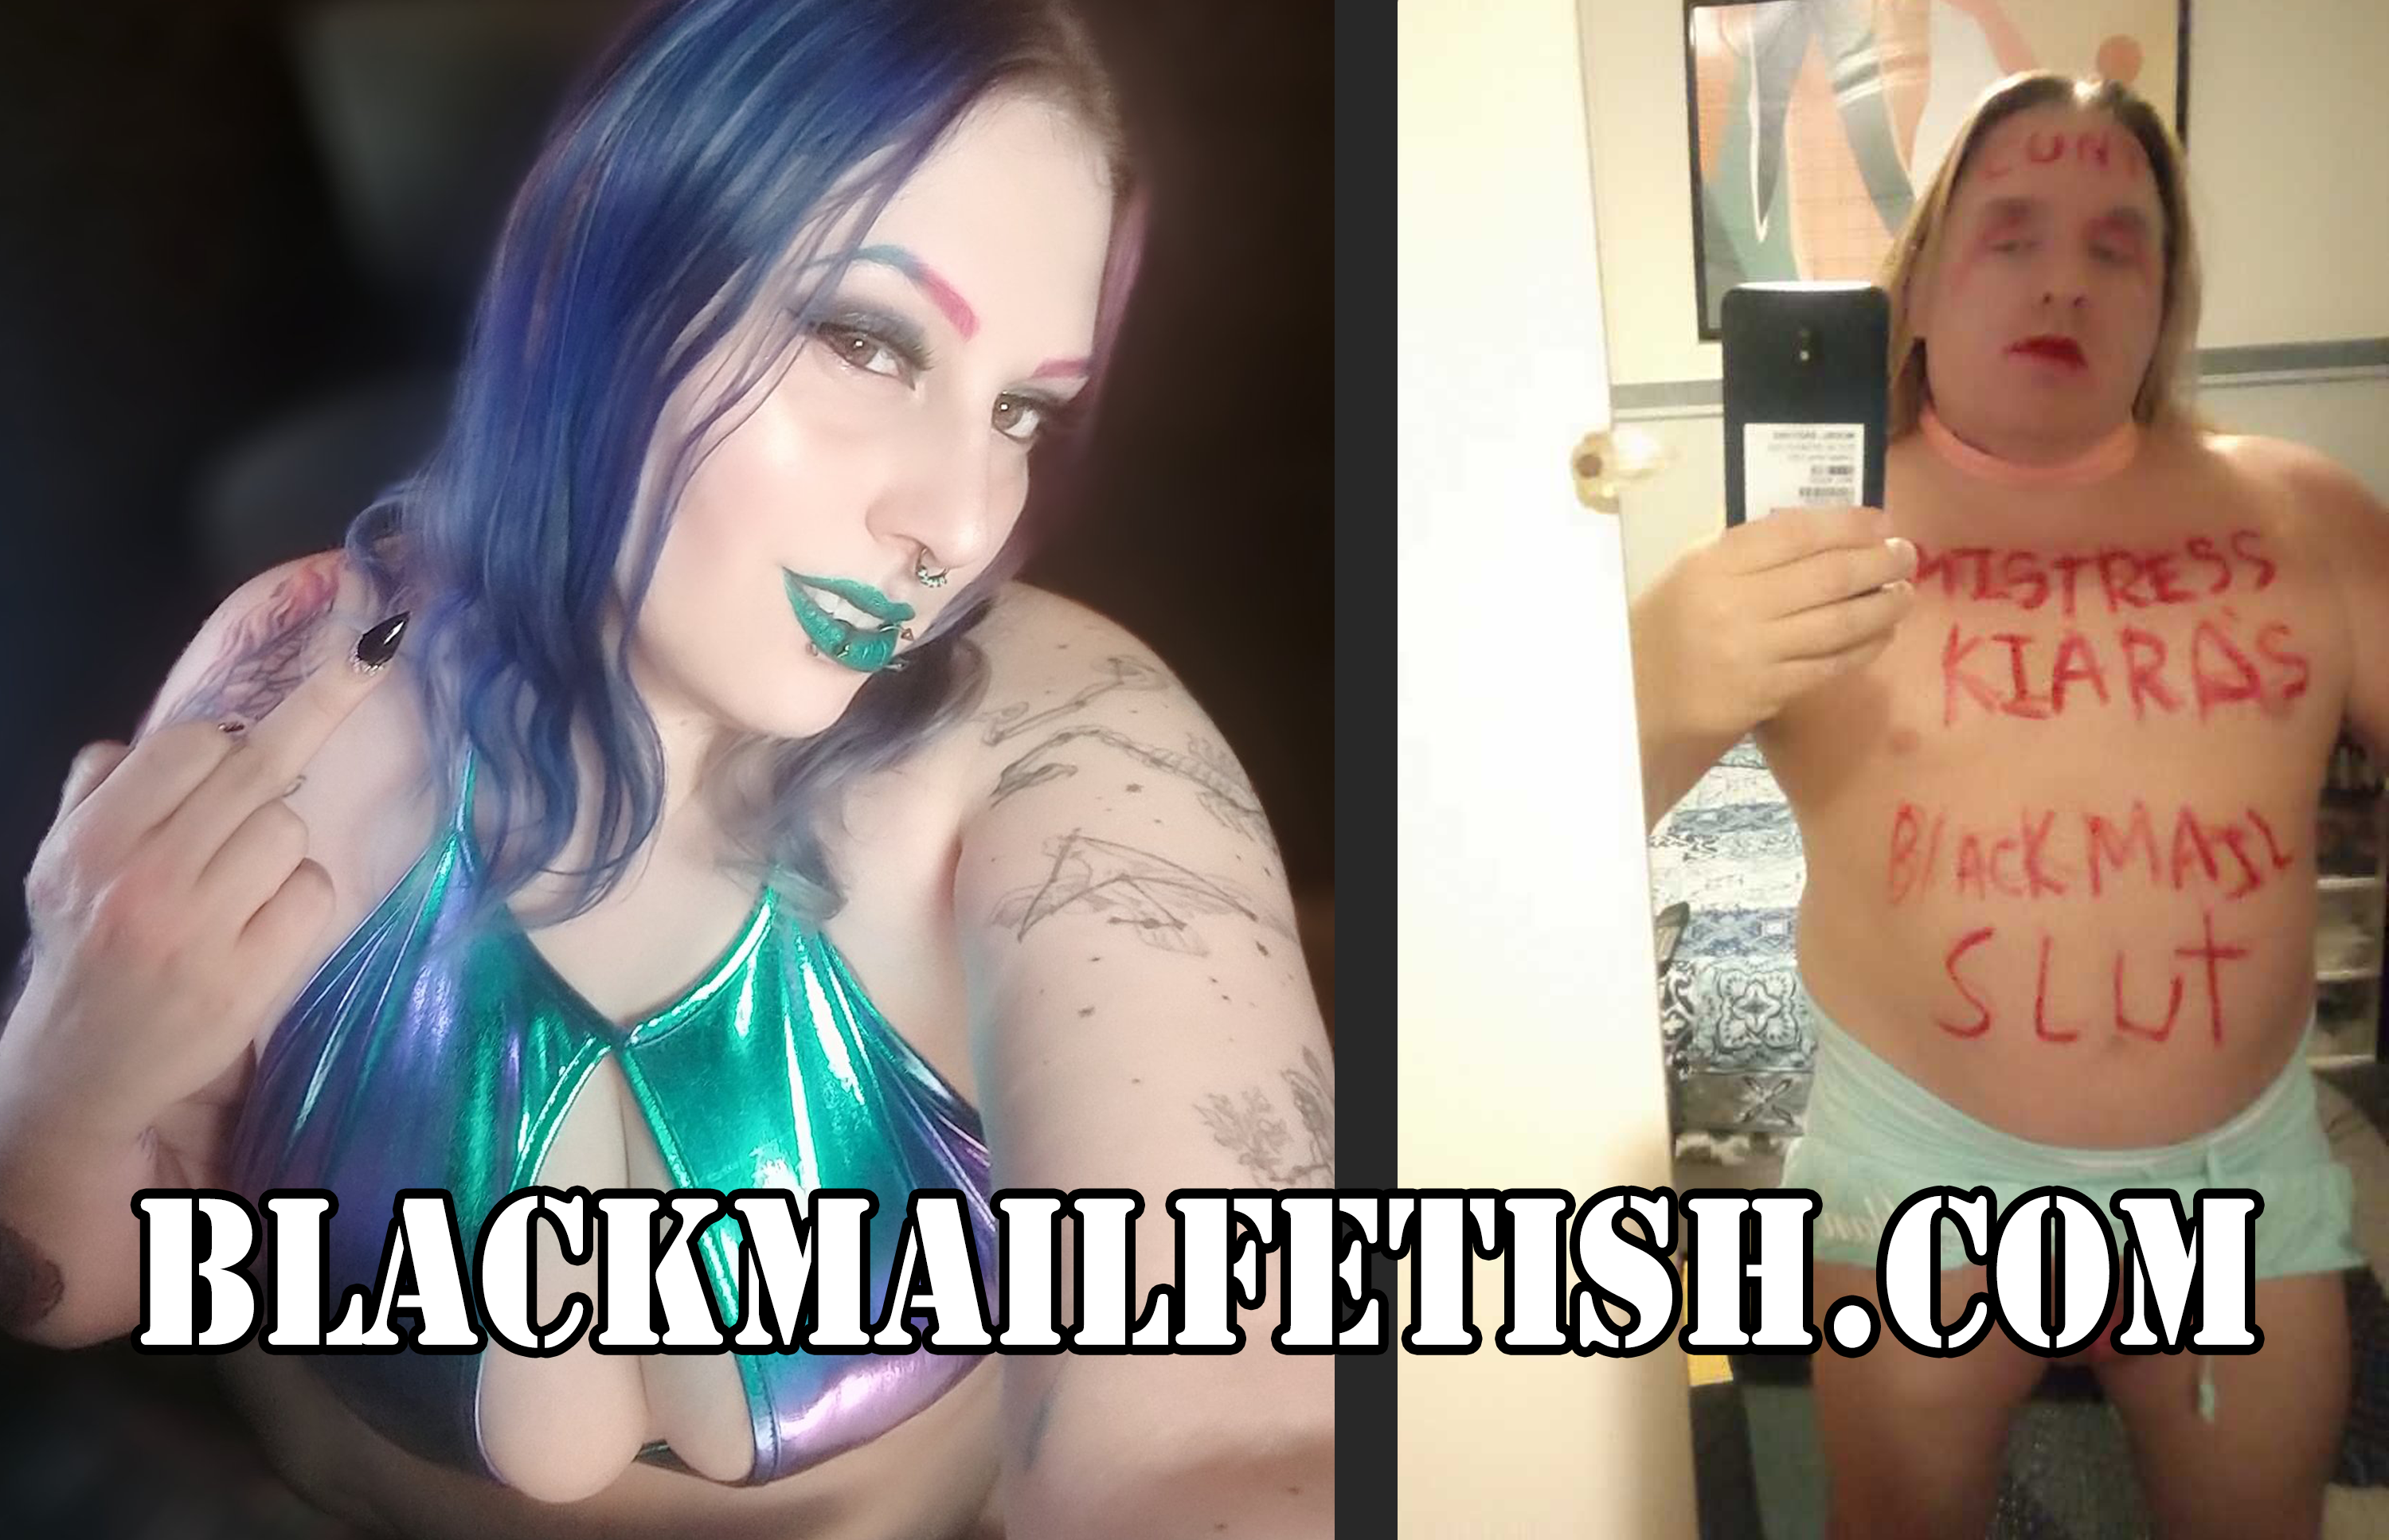 femdom blackmail Mistress Kiara exposes sissy bitch clint hurlbutt